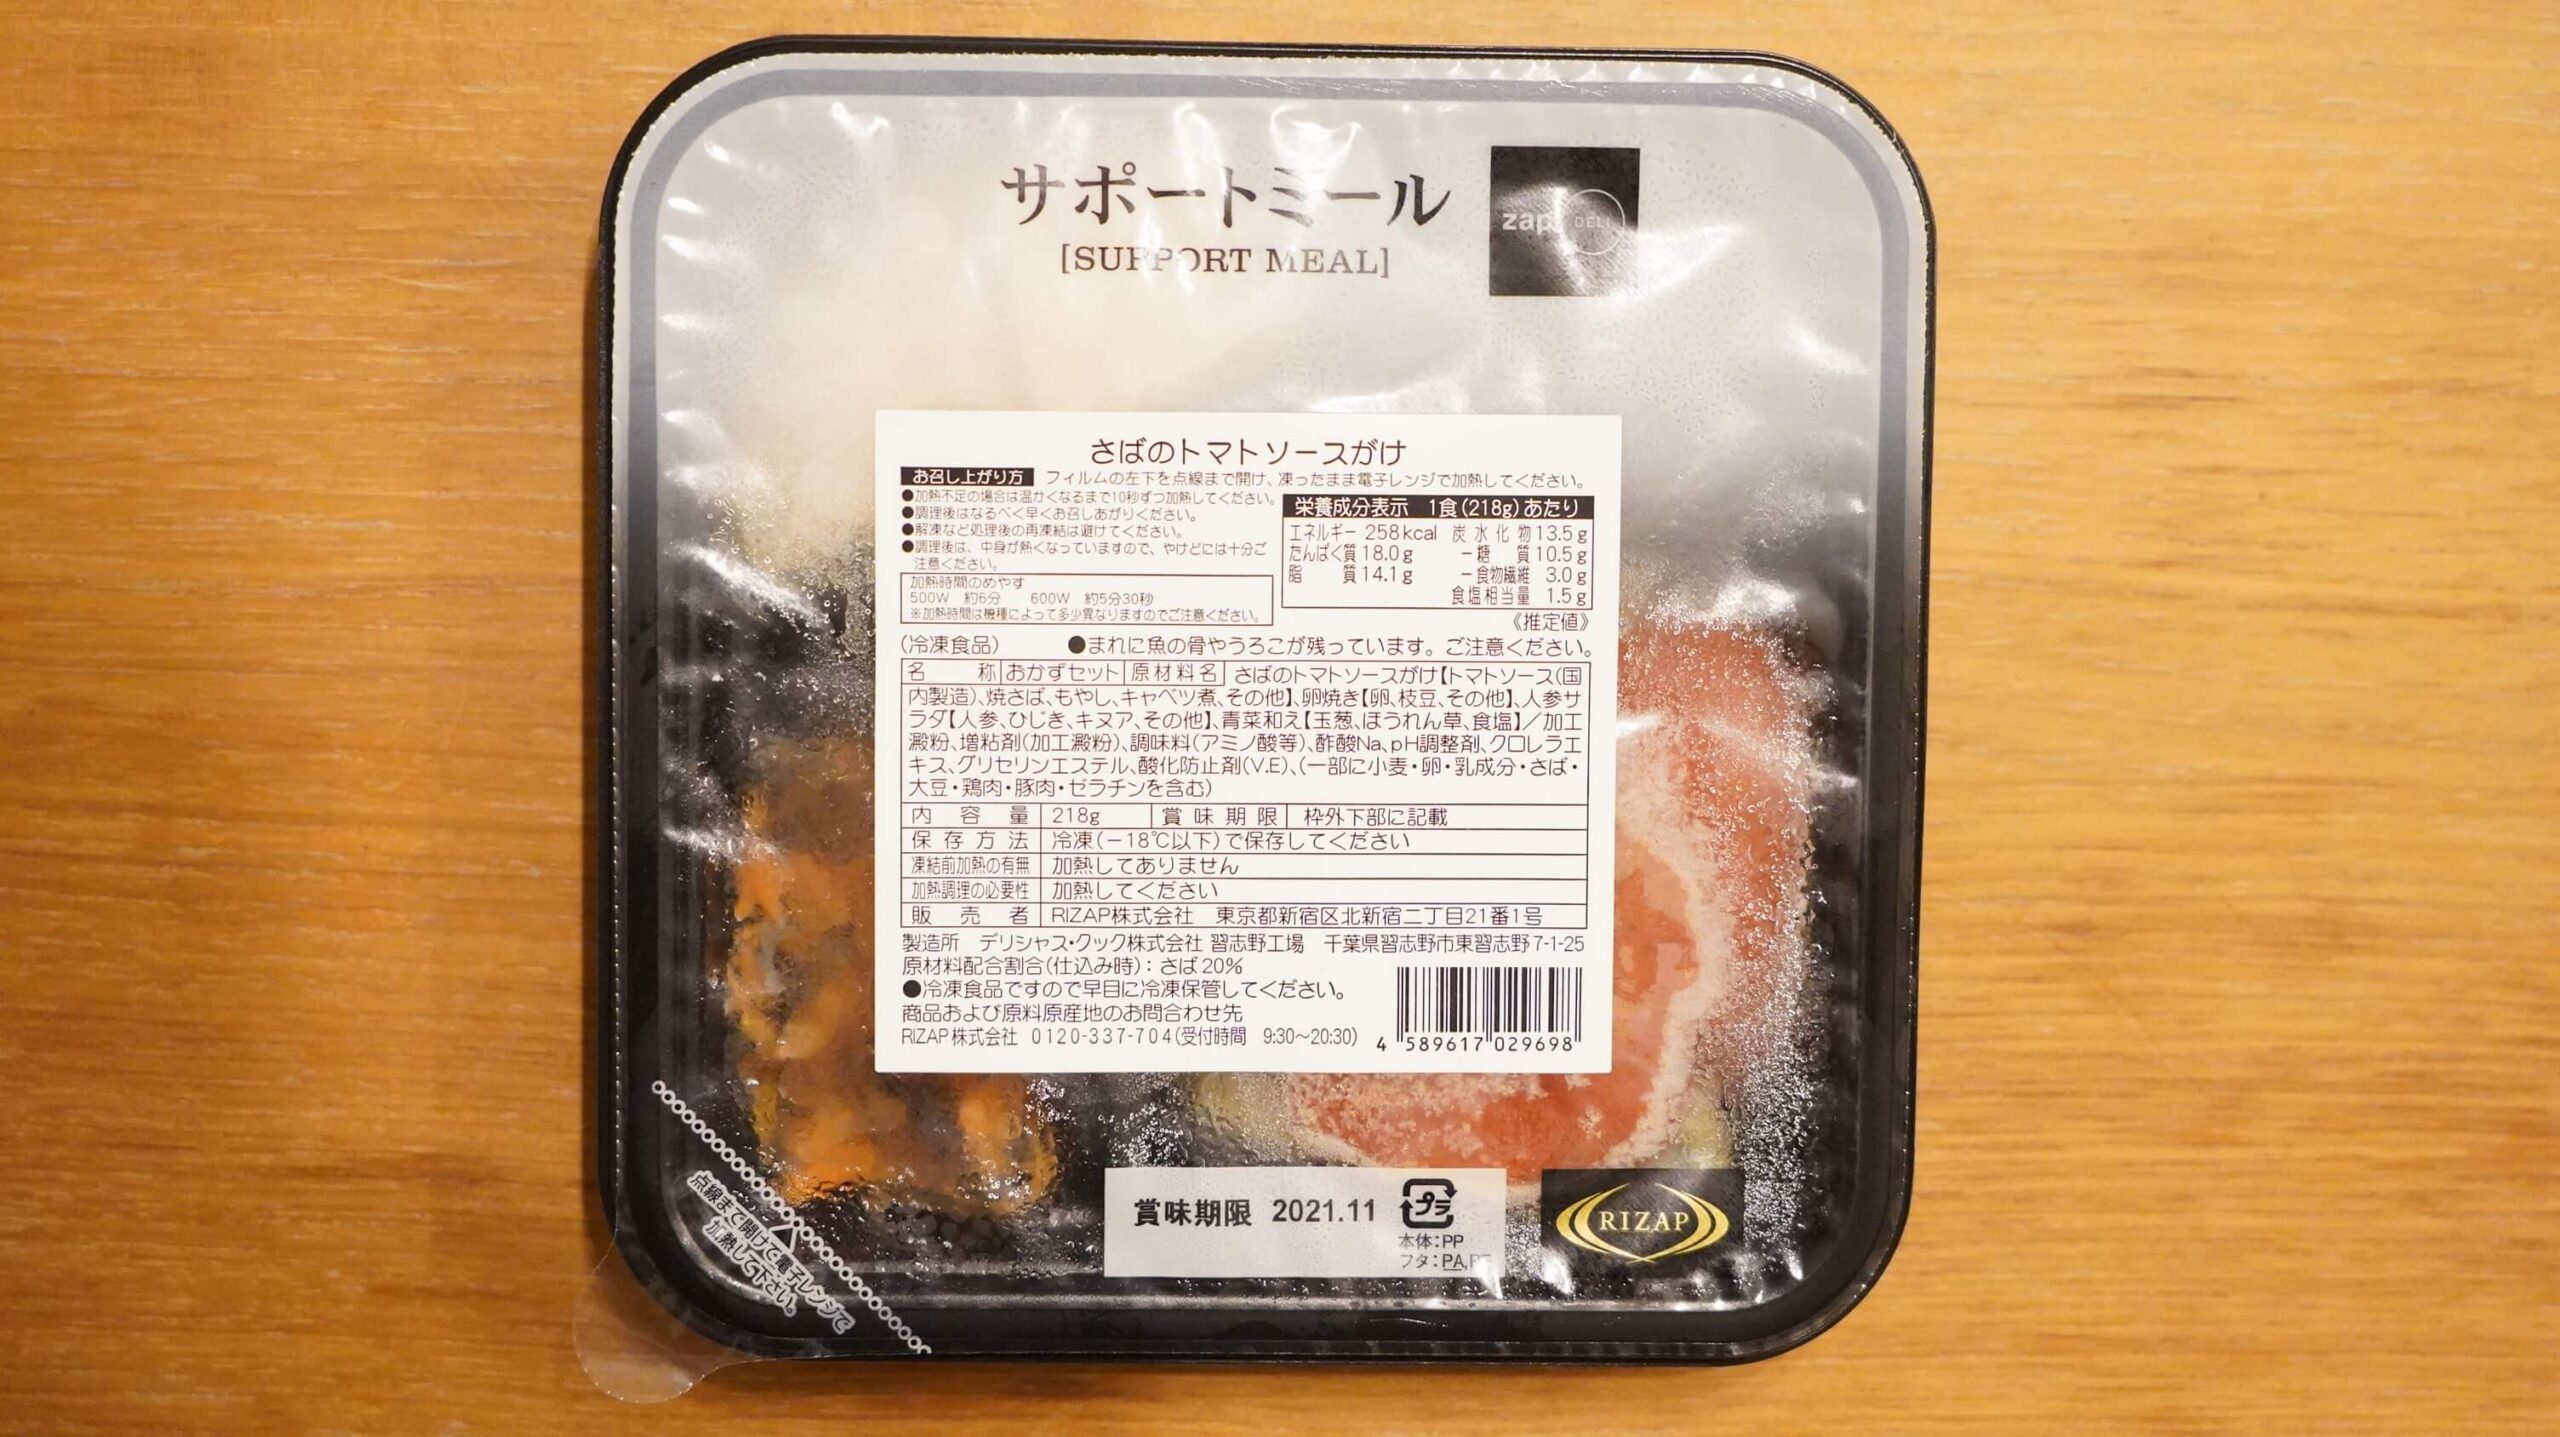 ライザップのサポートミール「さばのトマトソースがけ」のパッケージ写真